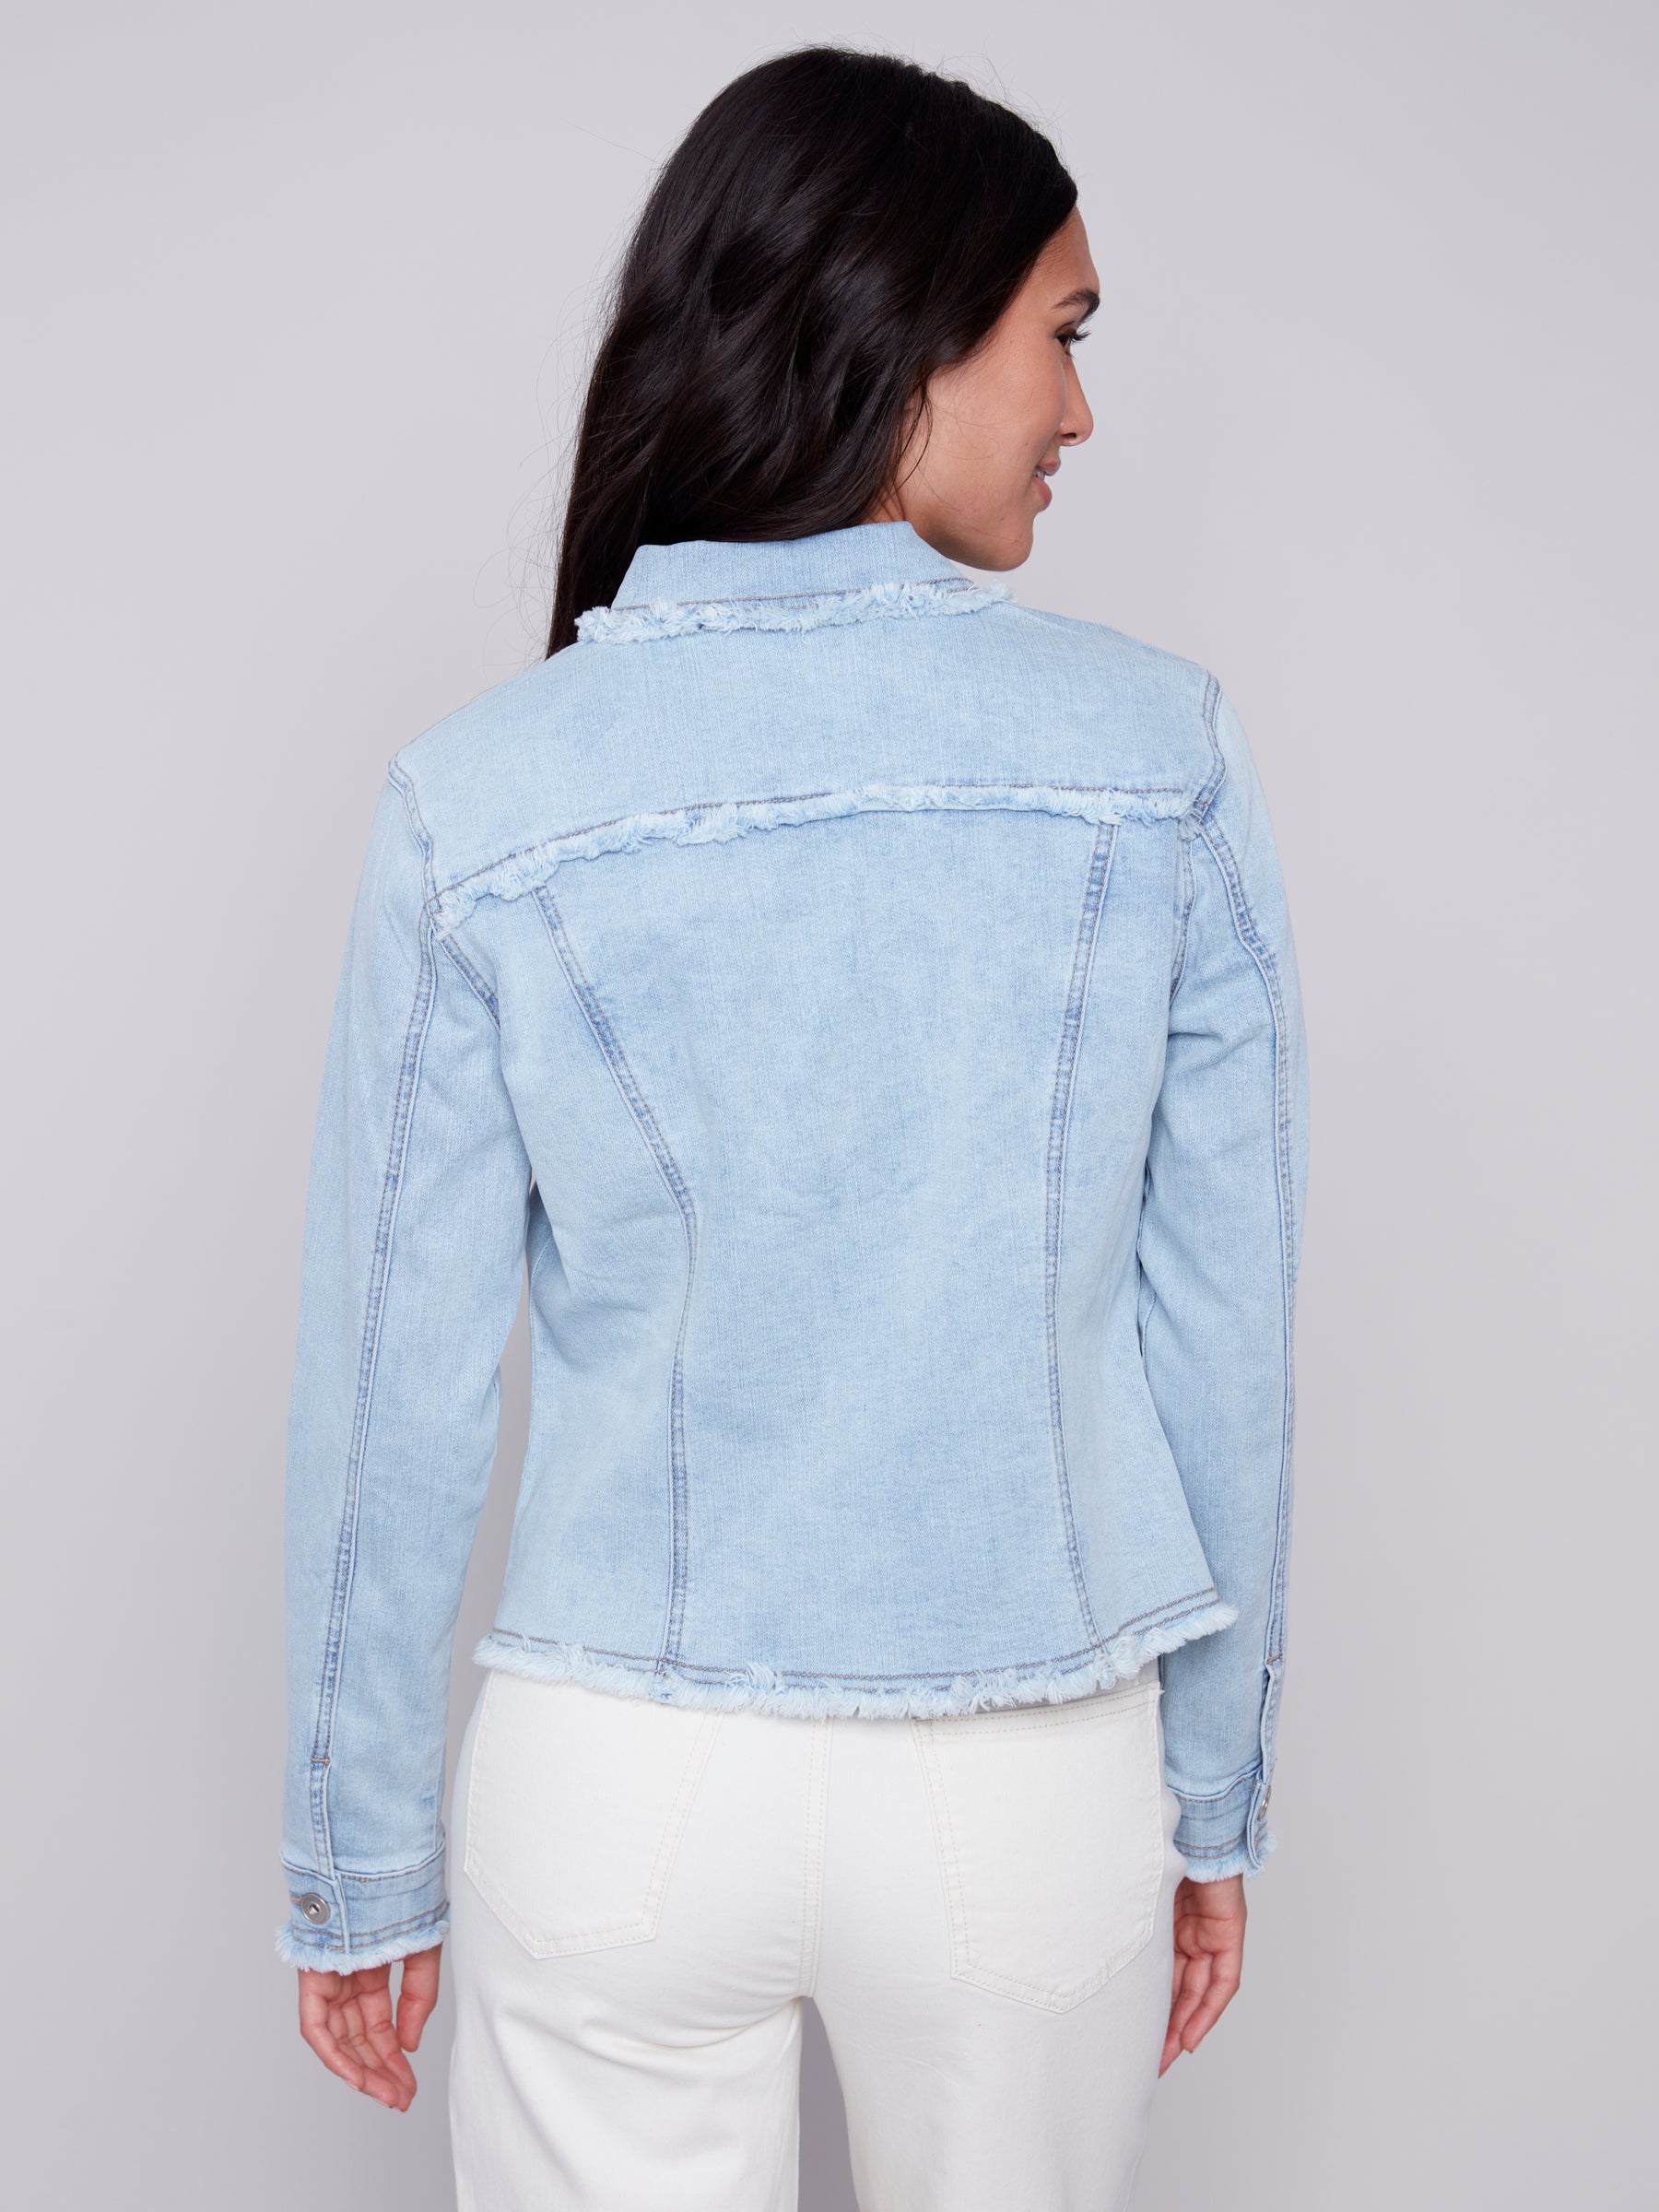 Jeans jacket Charlie B C6233-BLUE-WASHED